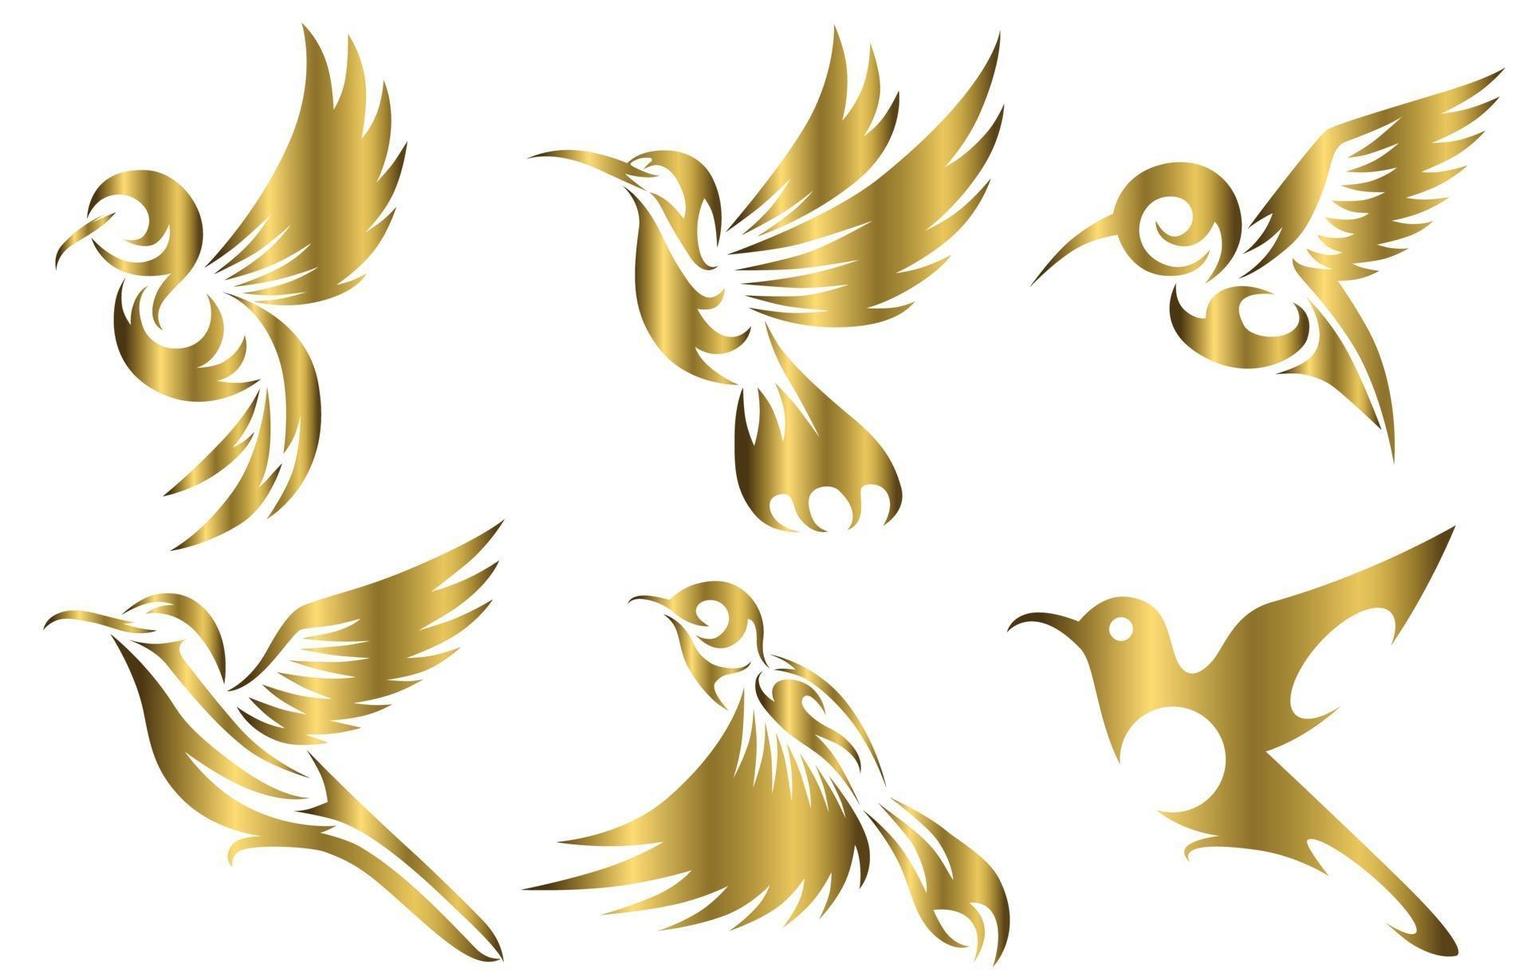 Linie Kunst Gold Vektor-Illustration sechs Bildsatz von fliegenden Kolibris geeignet für die Herstellung von Logos vektor